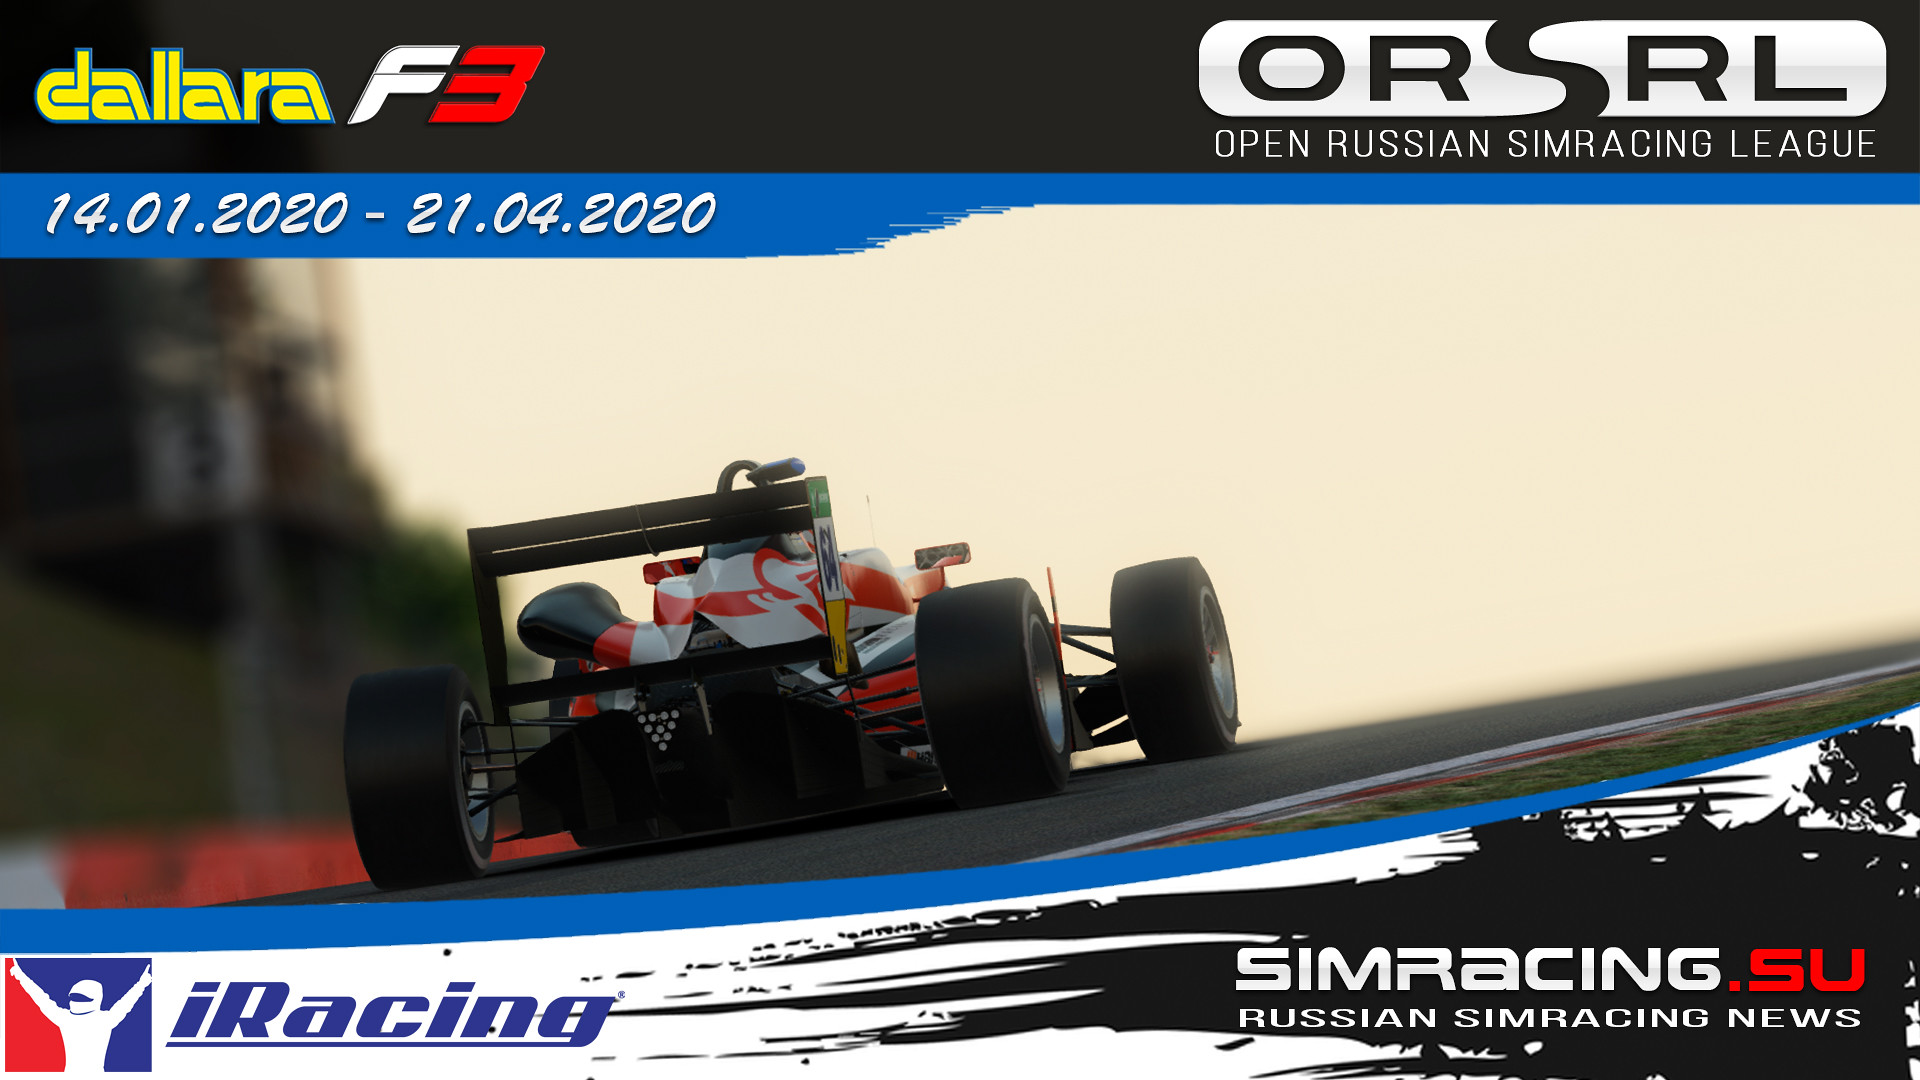 ORSRL Dallara F3 Championship 2020